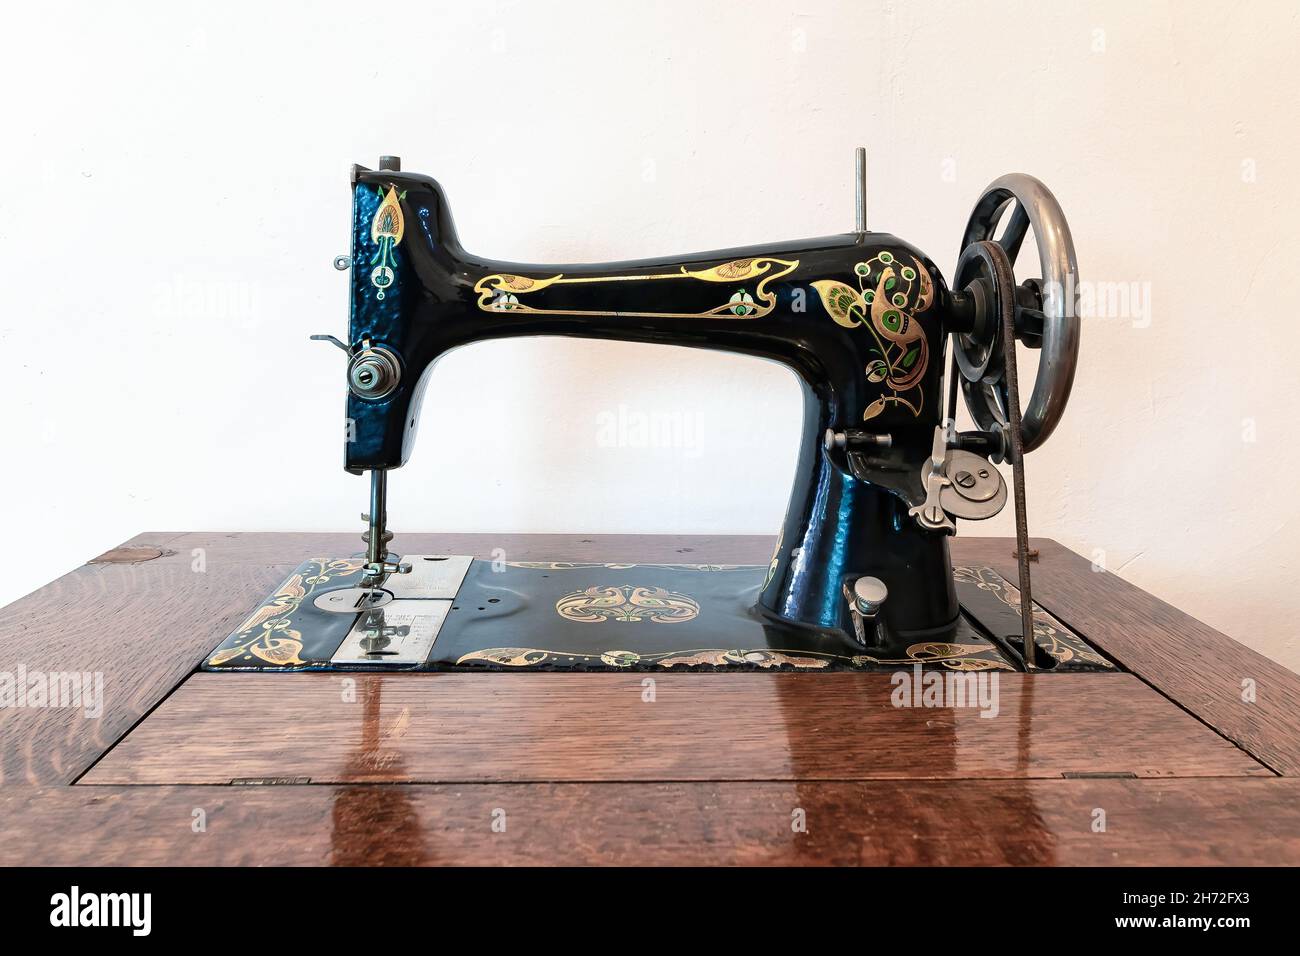 Ancienne machine à coudre dans un mobilier en bois Banque D'Images